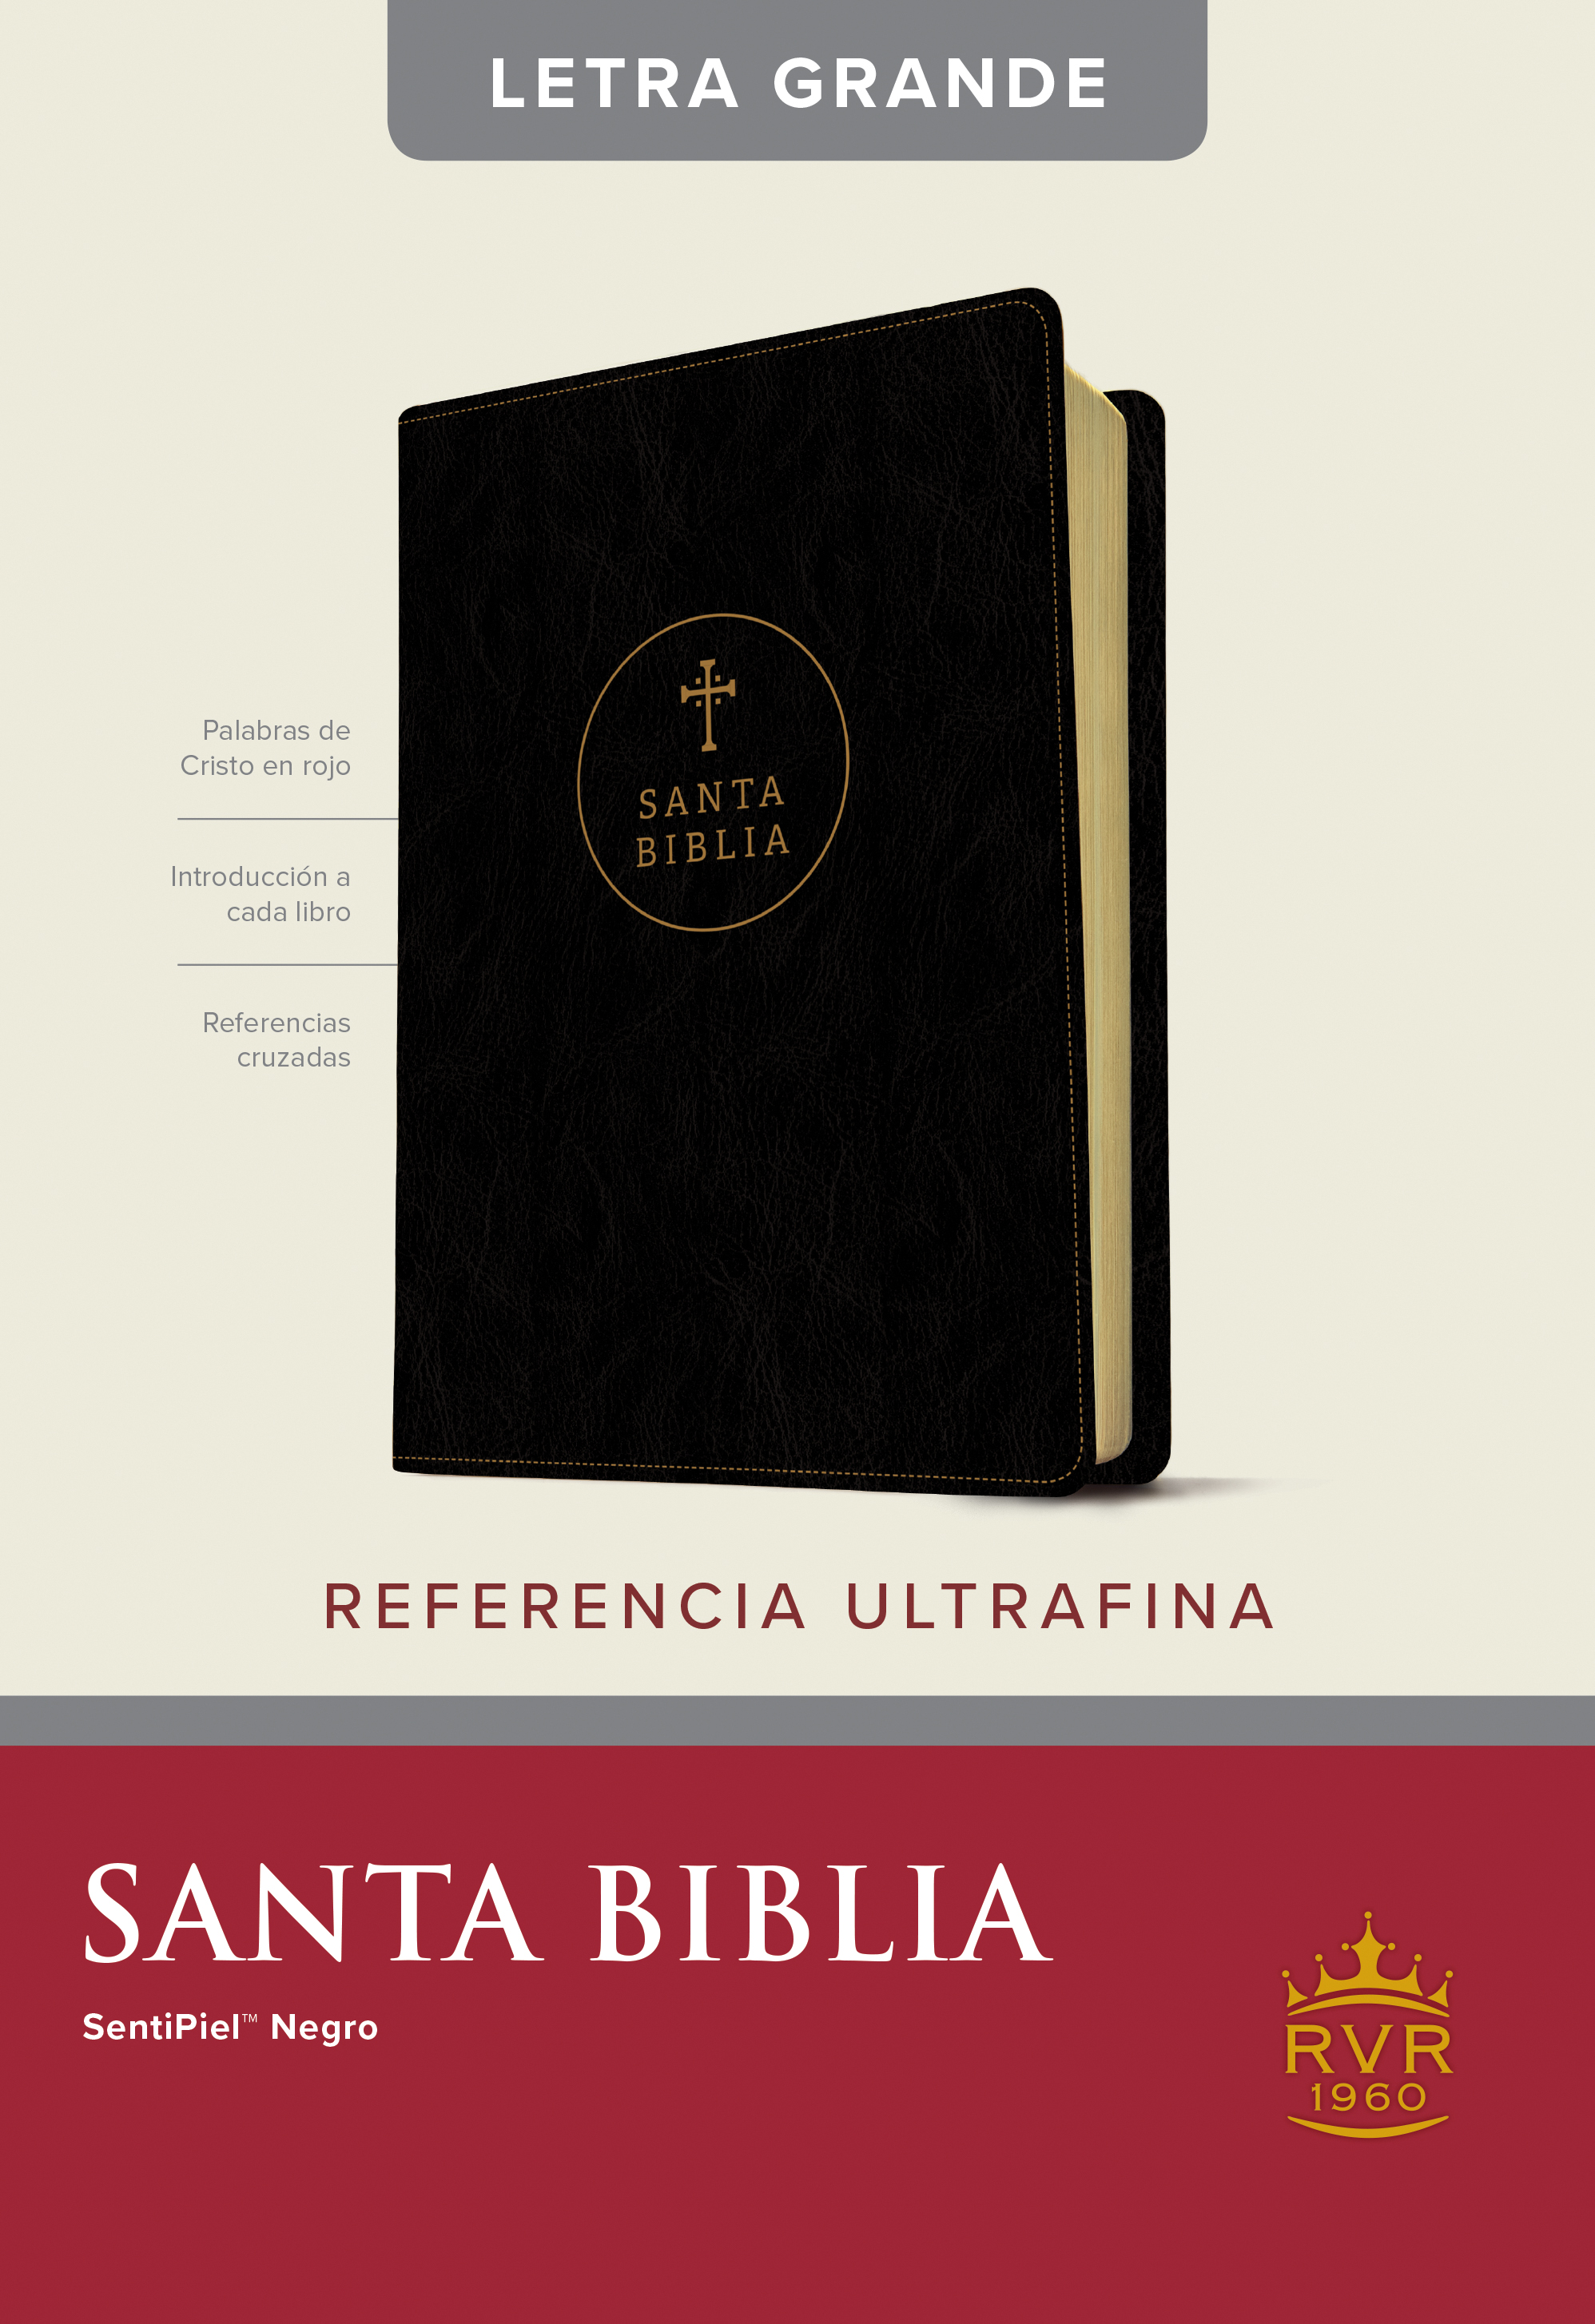 Biblia RVR 1960, Edici�n de referencia ultrafina, letra grande negro>